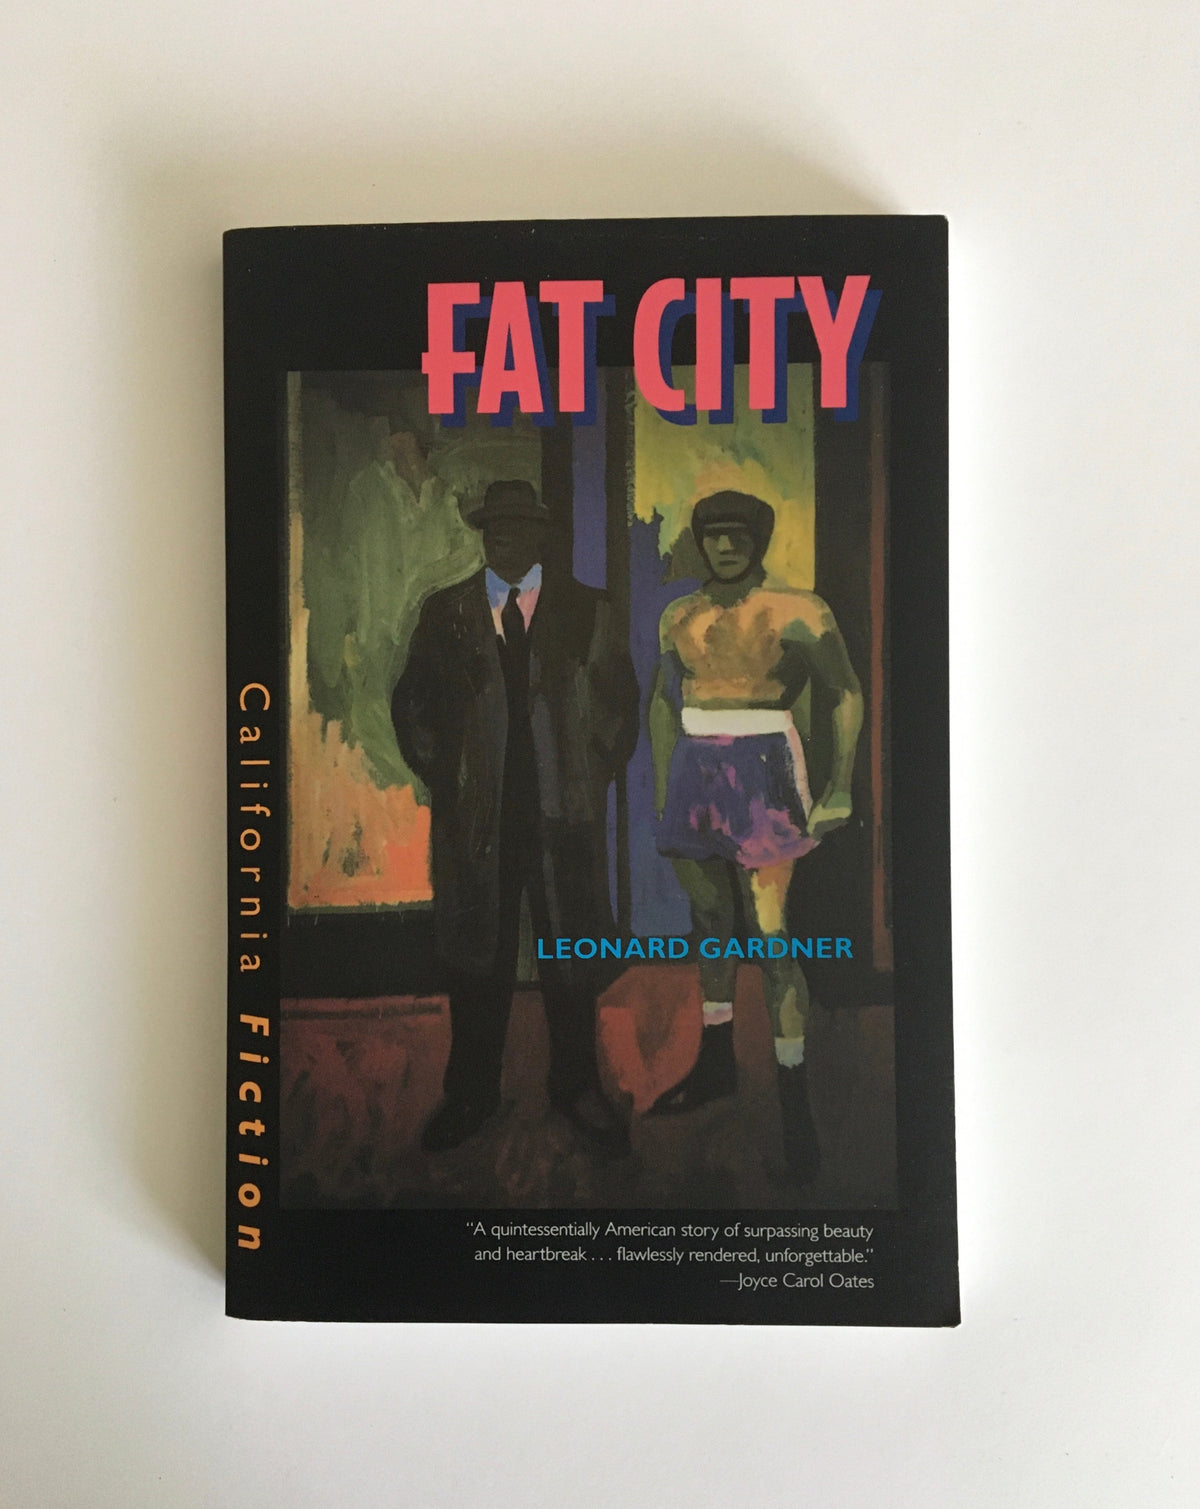 Fat City by Leonard Gardner